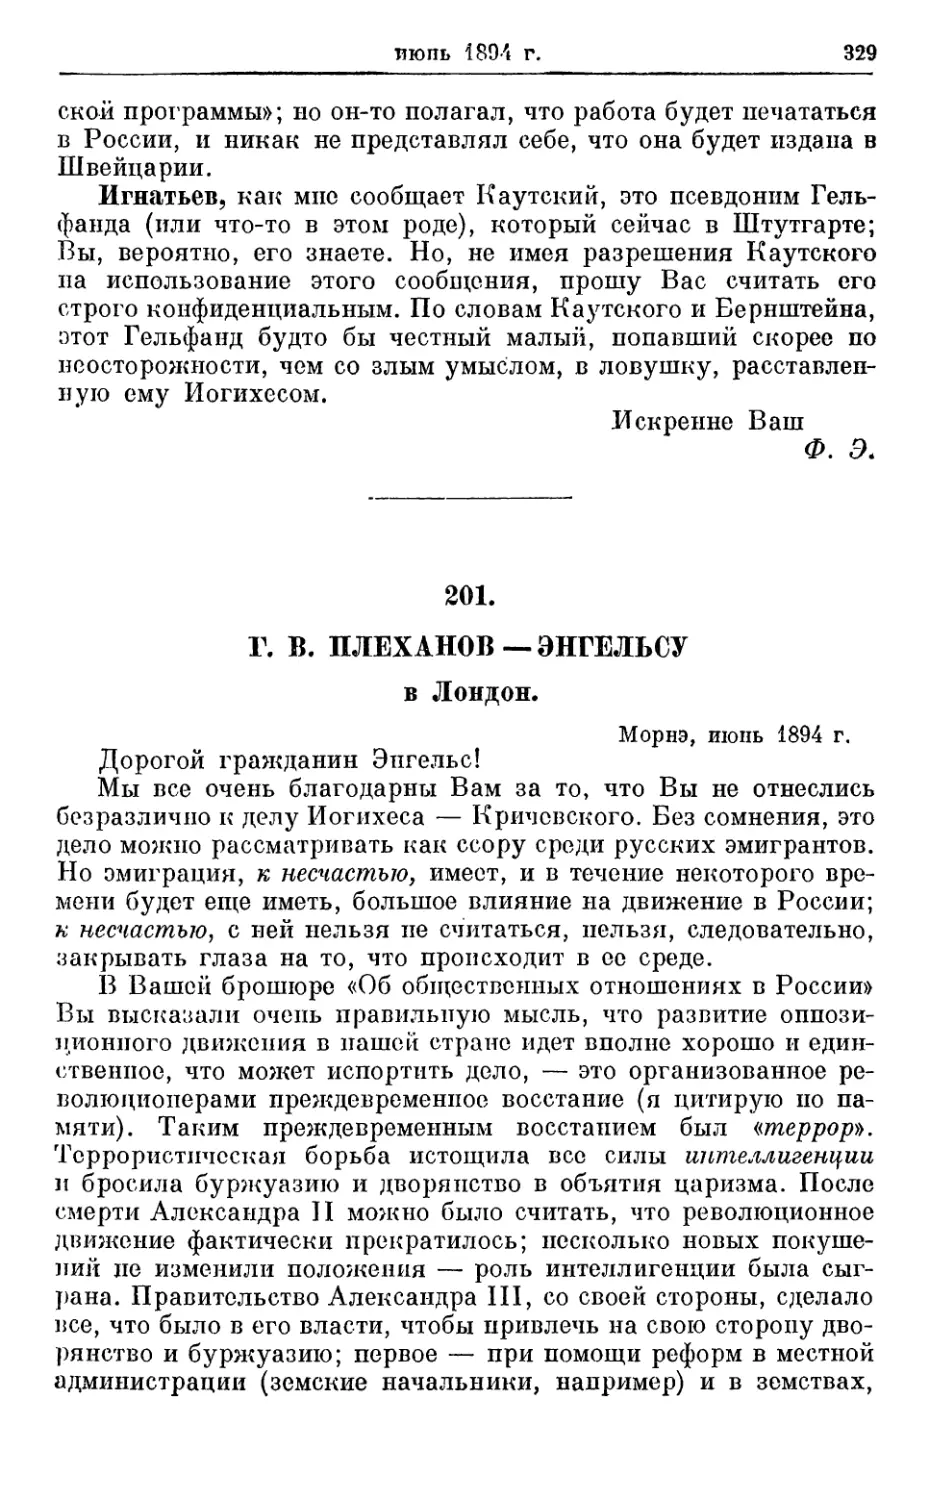 201. Плеханов — Энгельсу, июнь 1894г